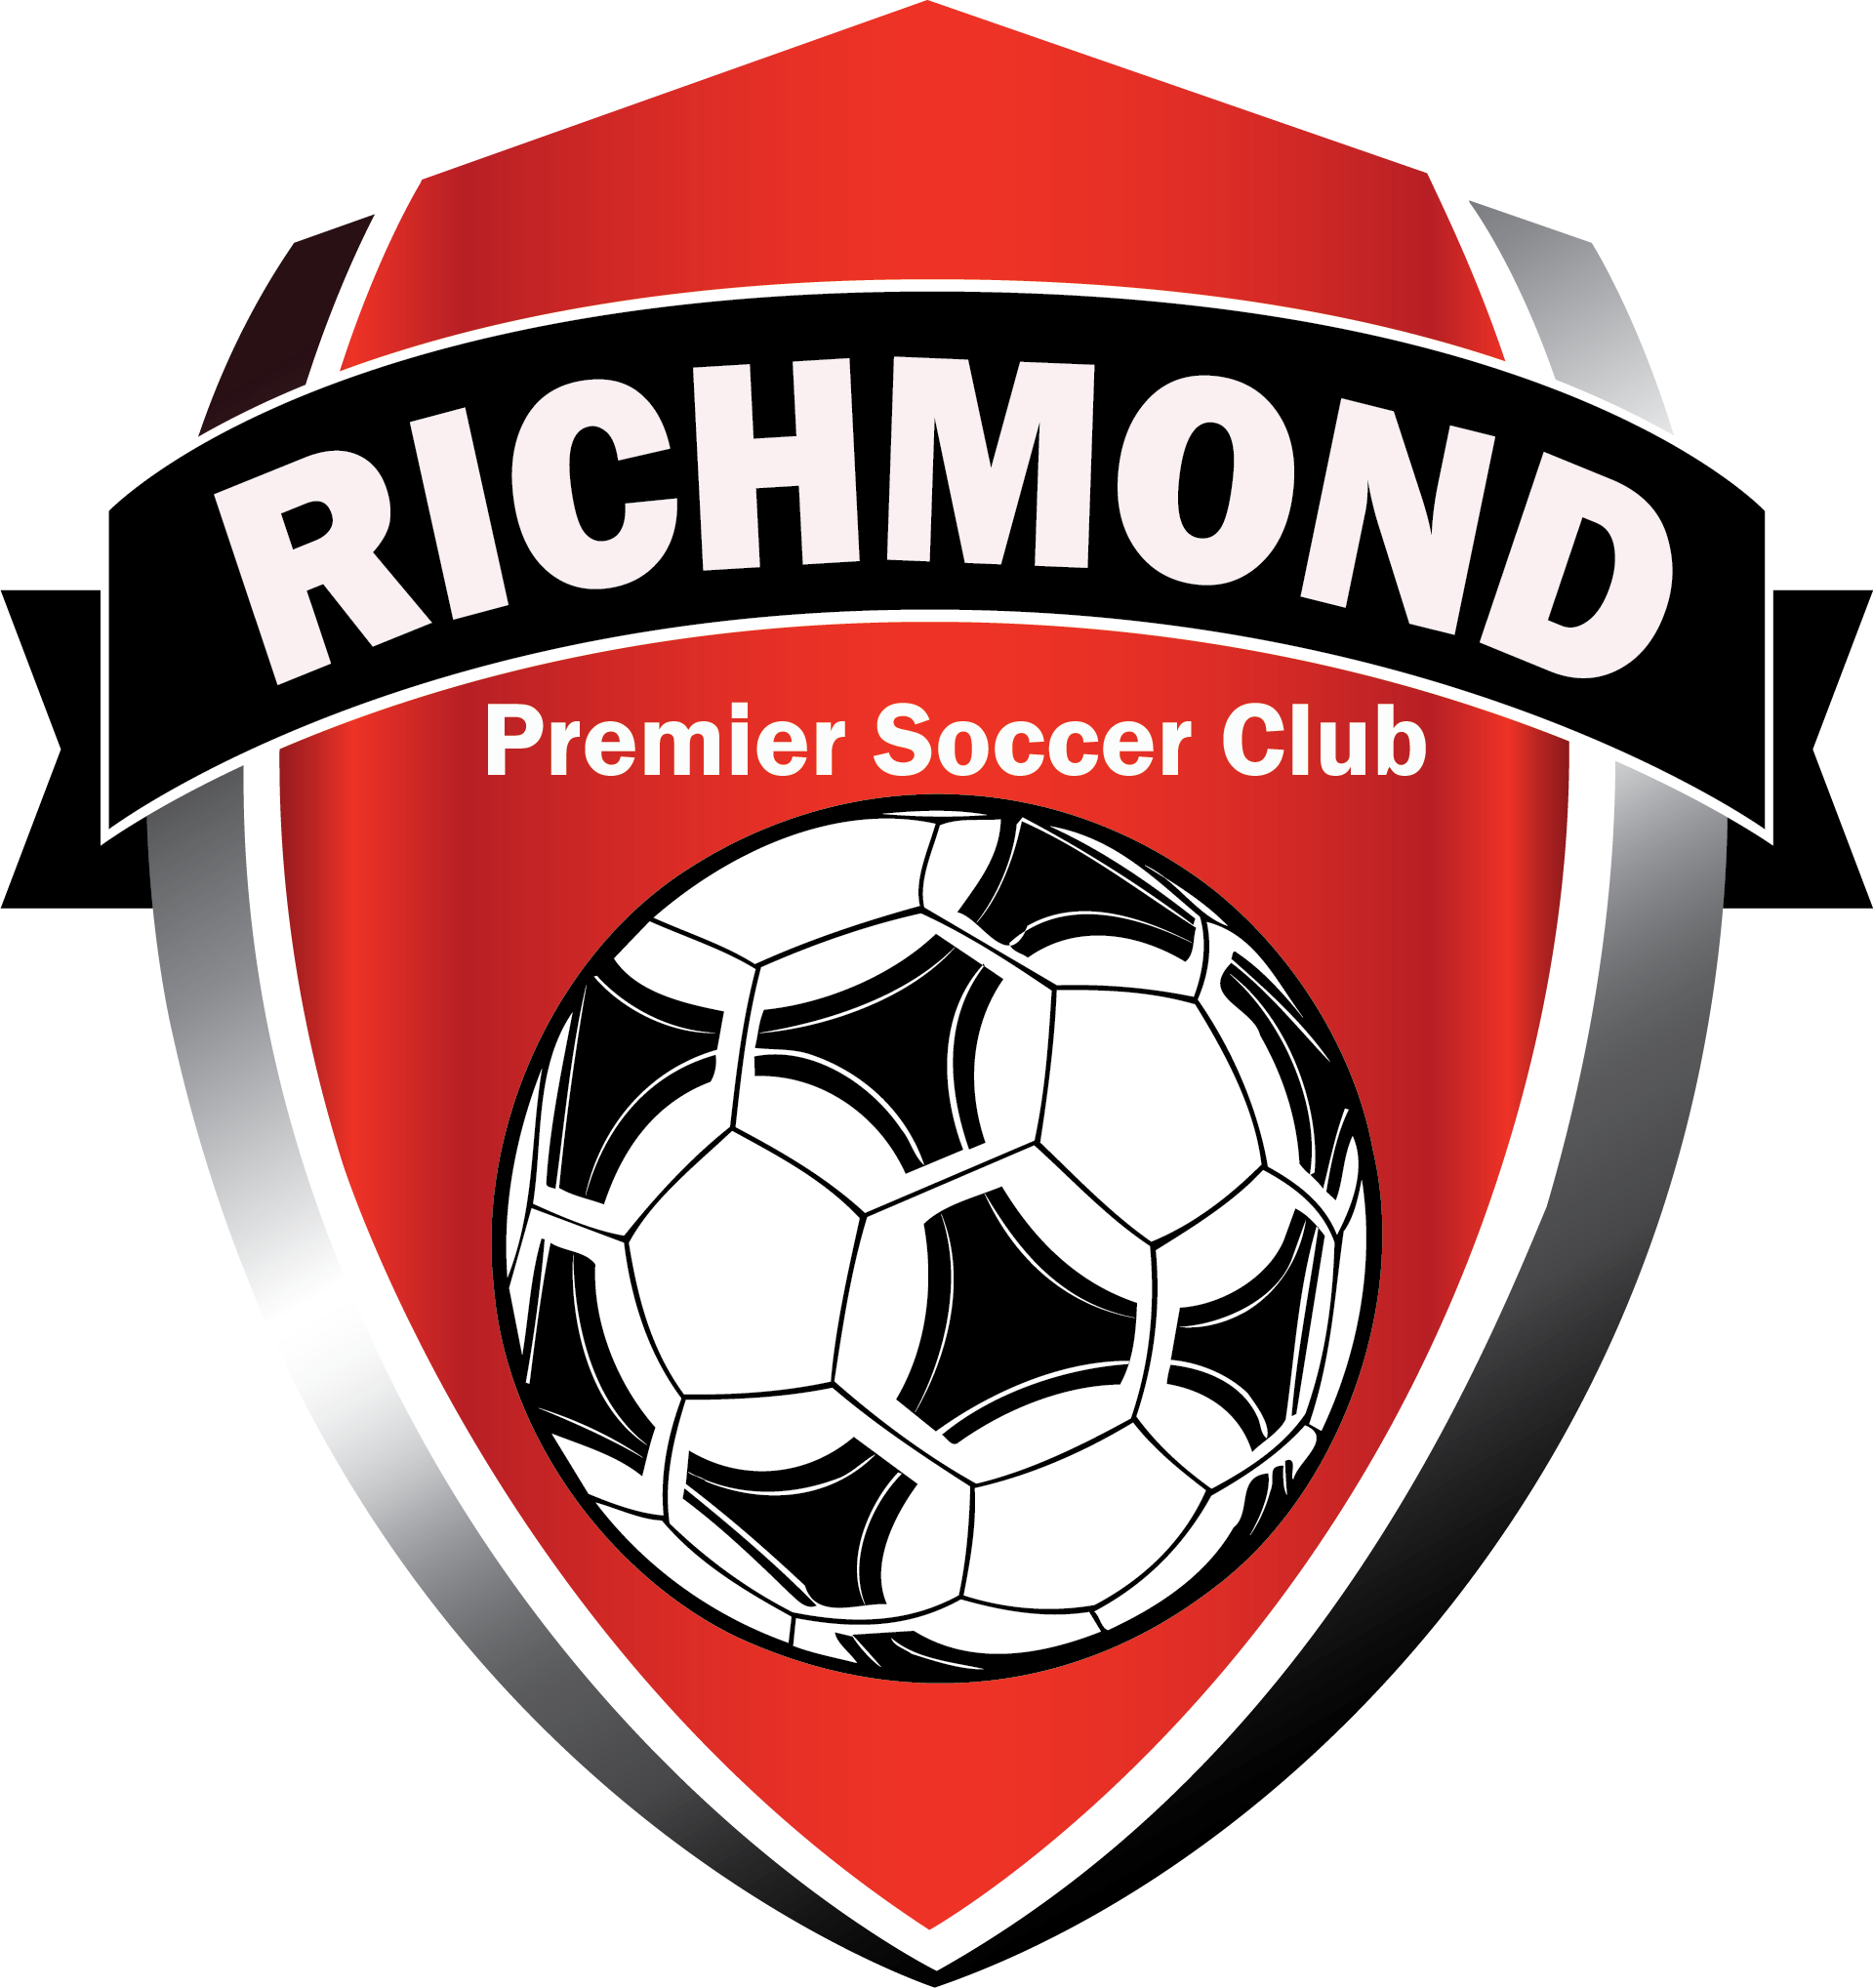 Richmond Premier Soccer Club team badge